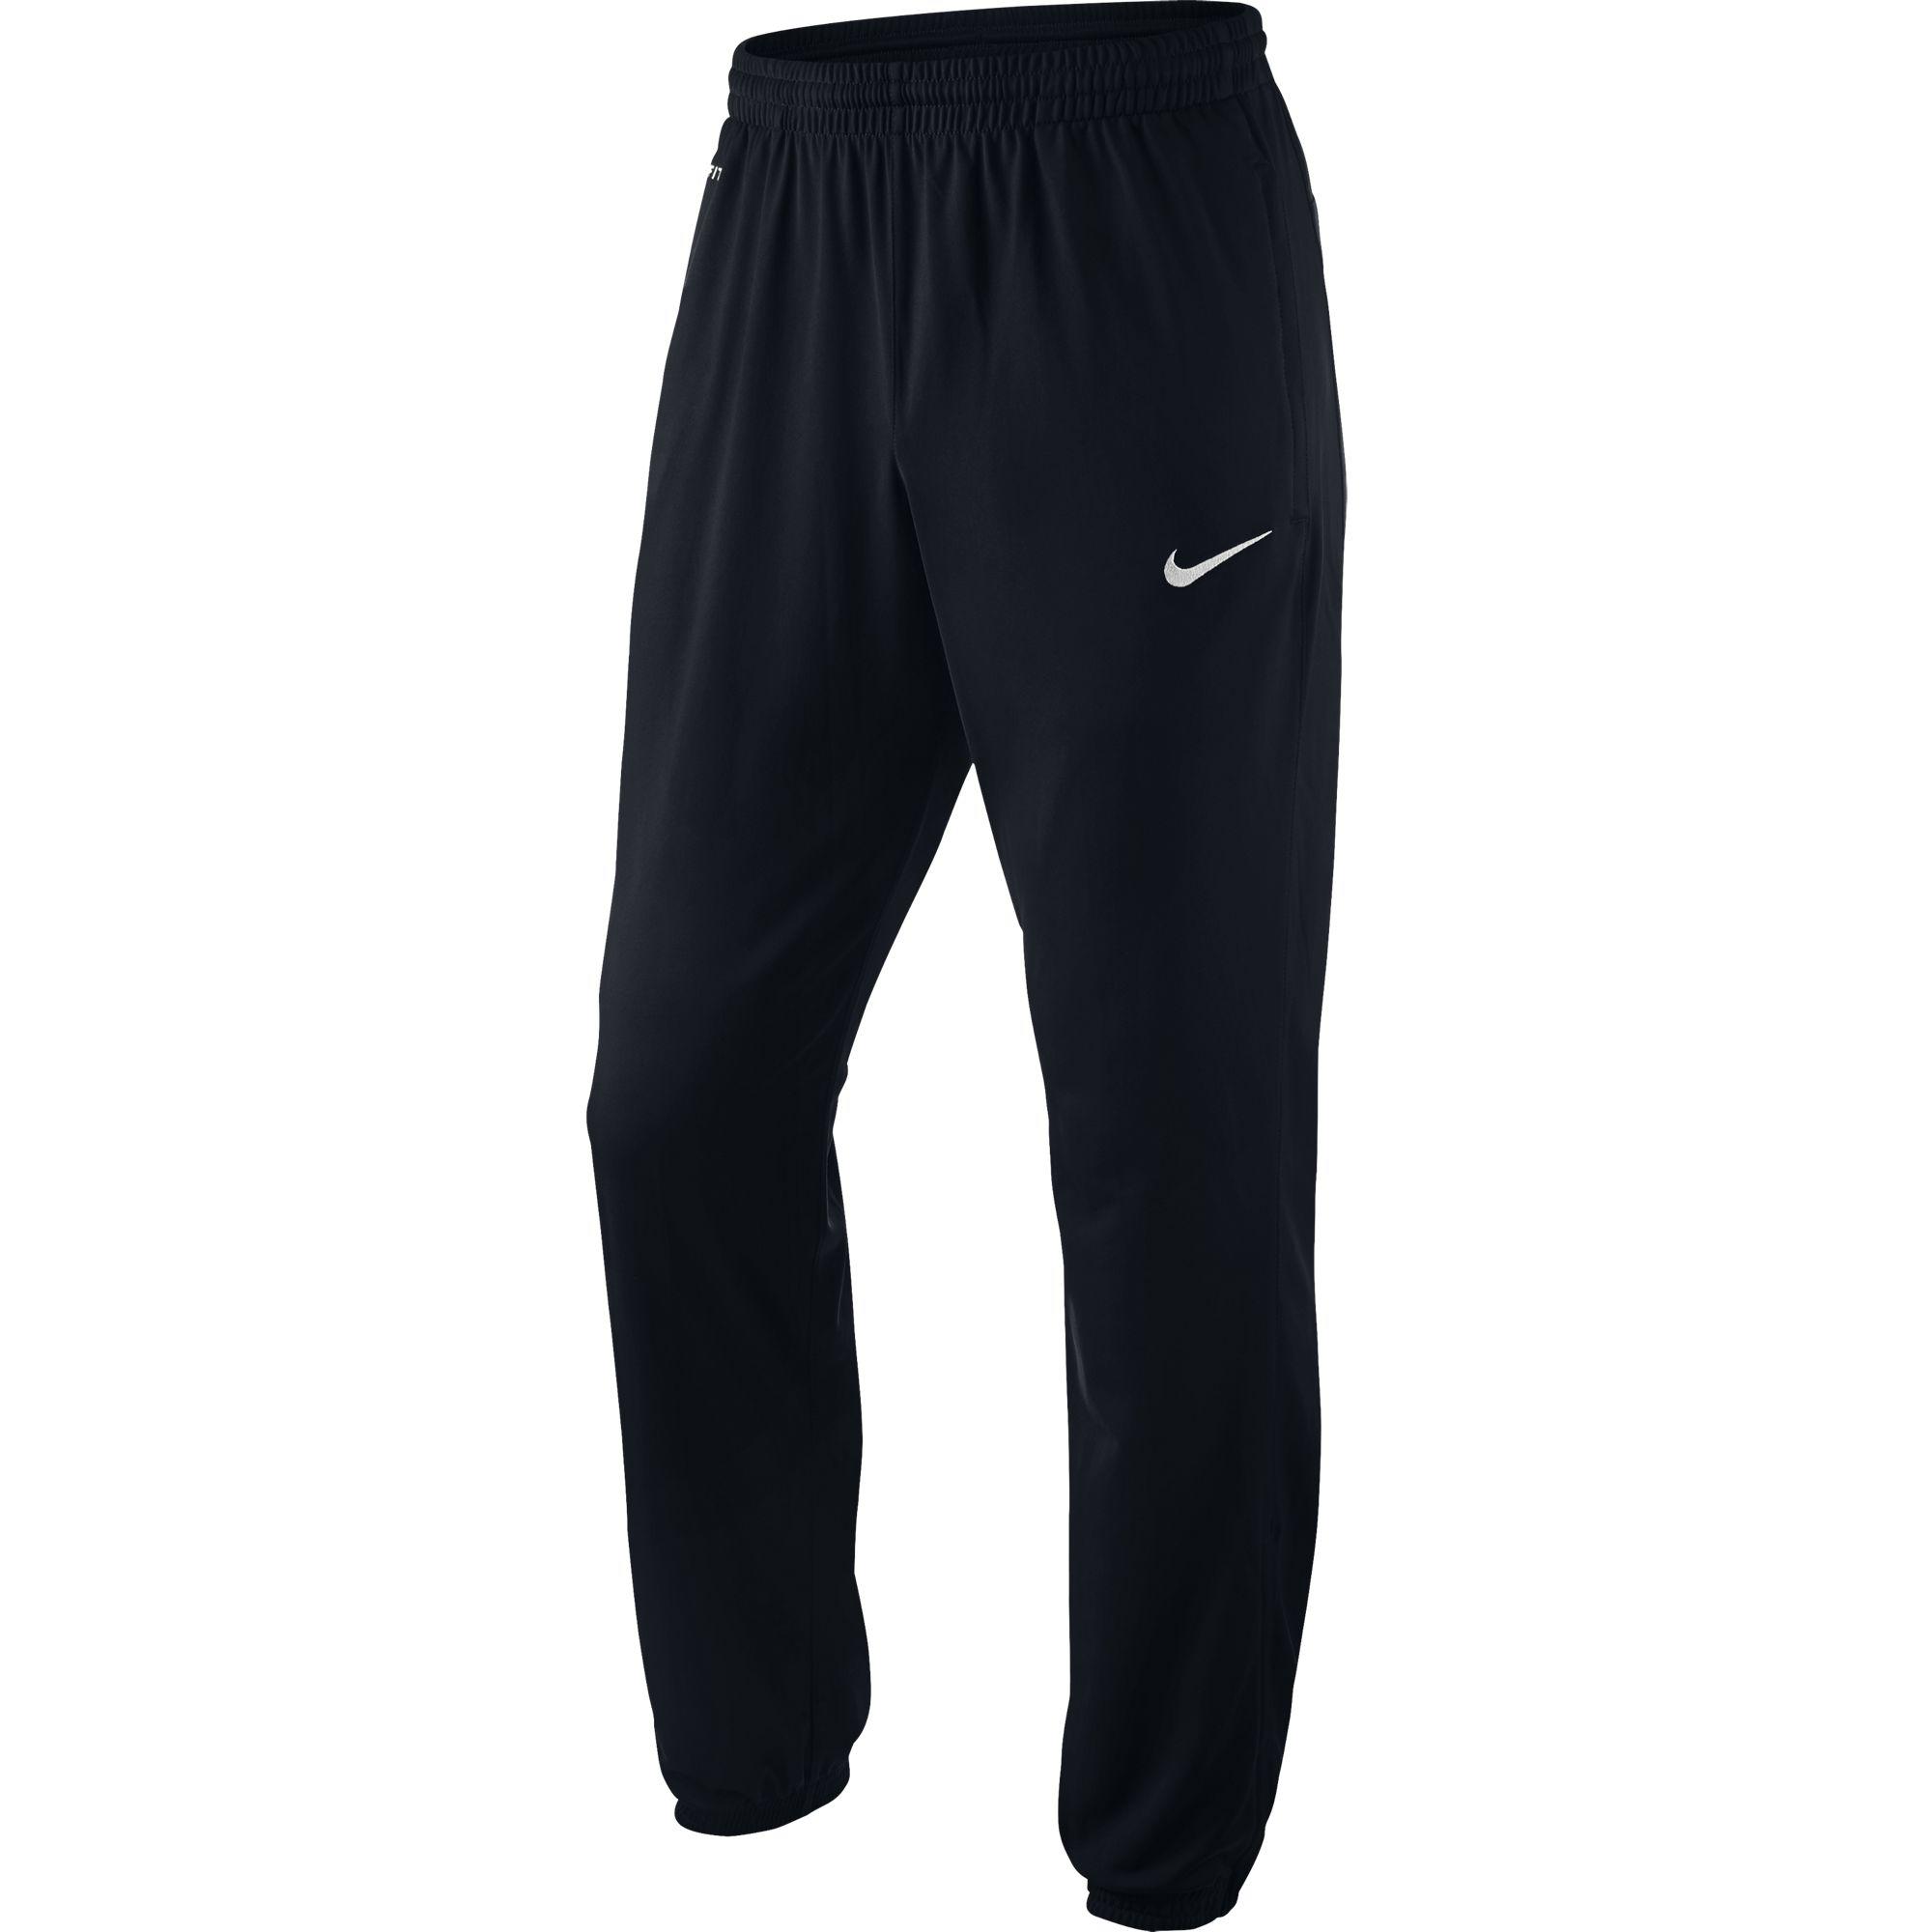 Nike Mens Cuffed Training Pants - Black - Tennisnuts.com